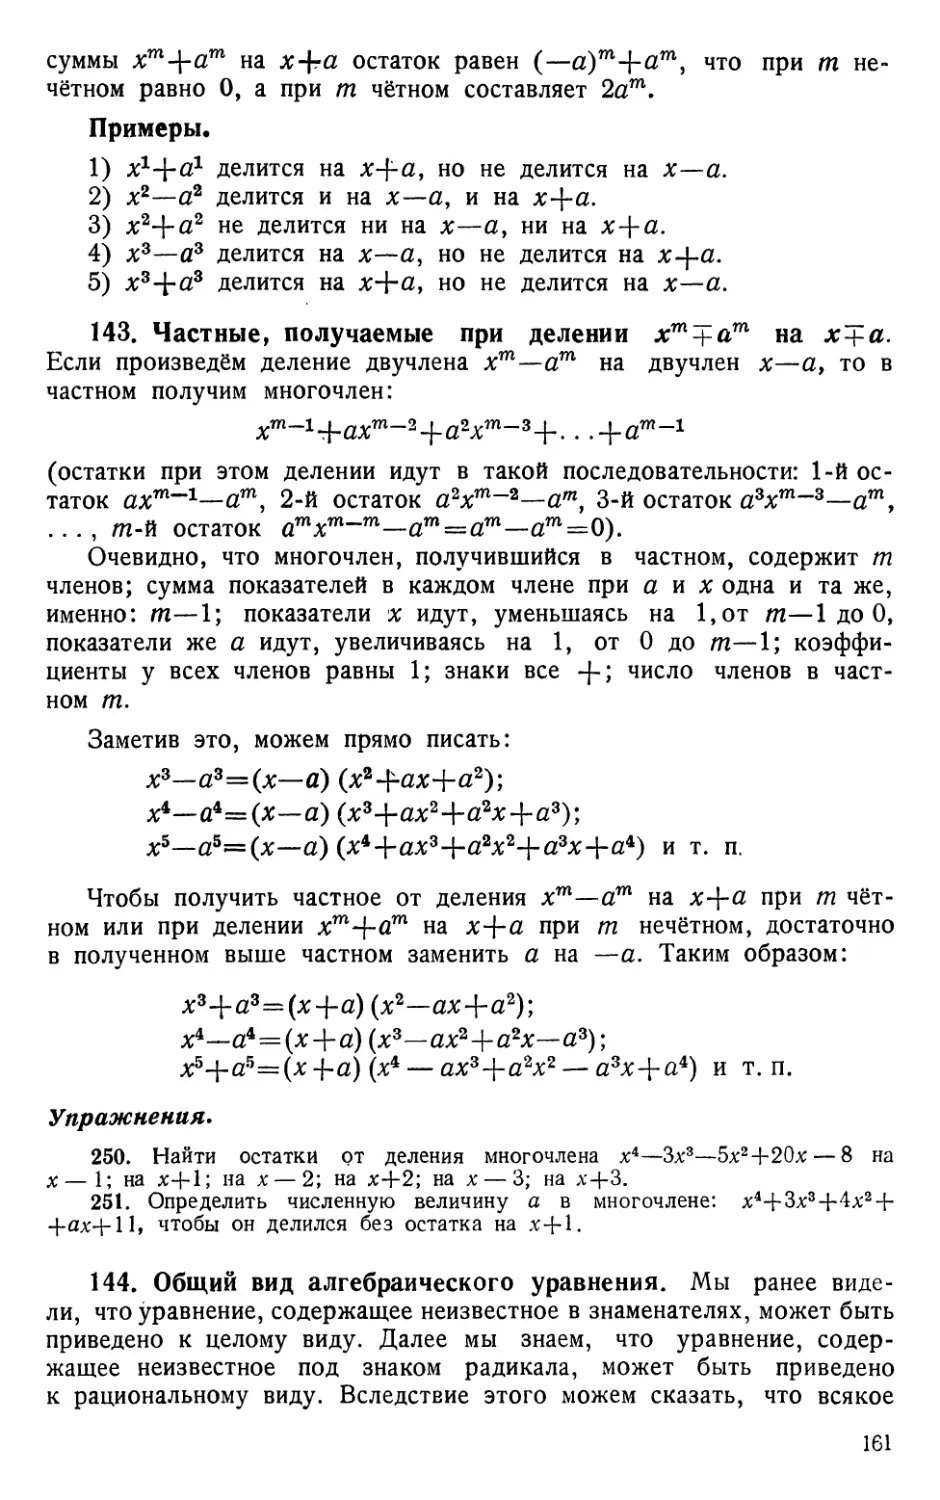 143. Частные, получаемые при делении x^m ± а^m на х±а
Упражнения
144. Общий вид алгебраического уравнения